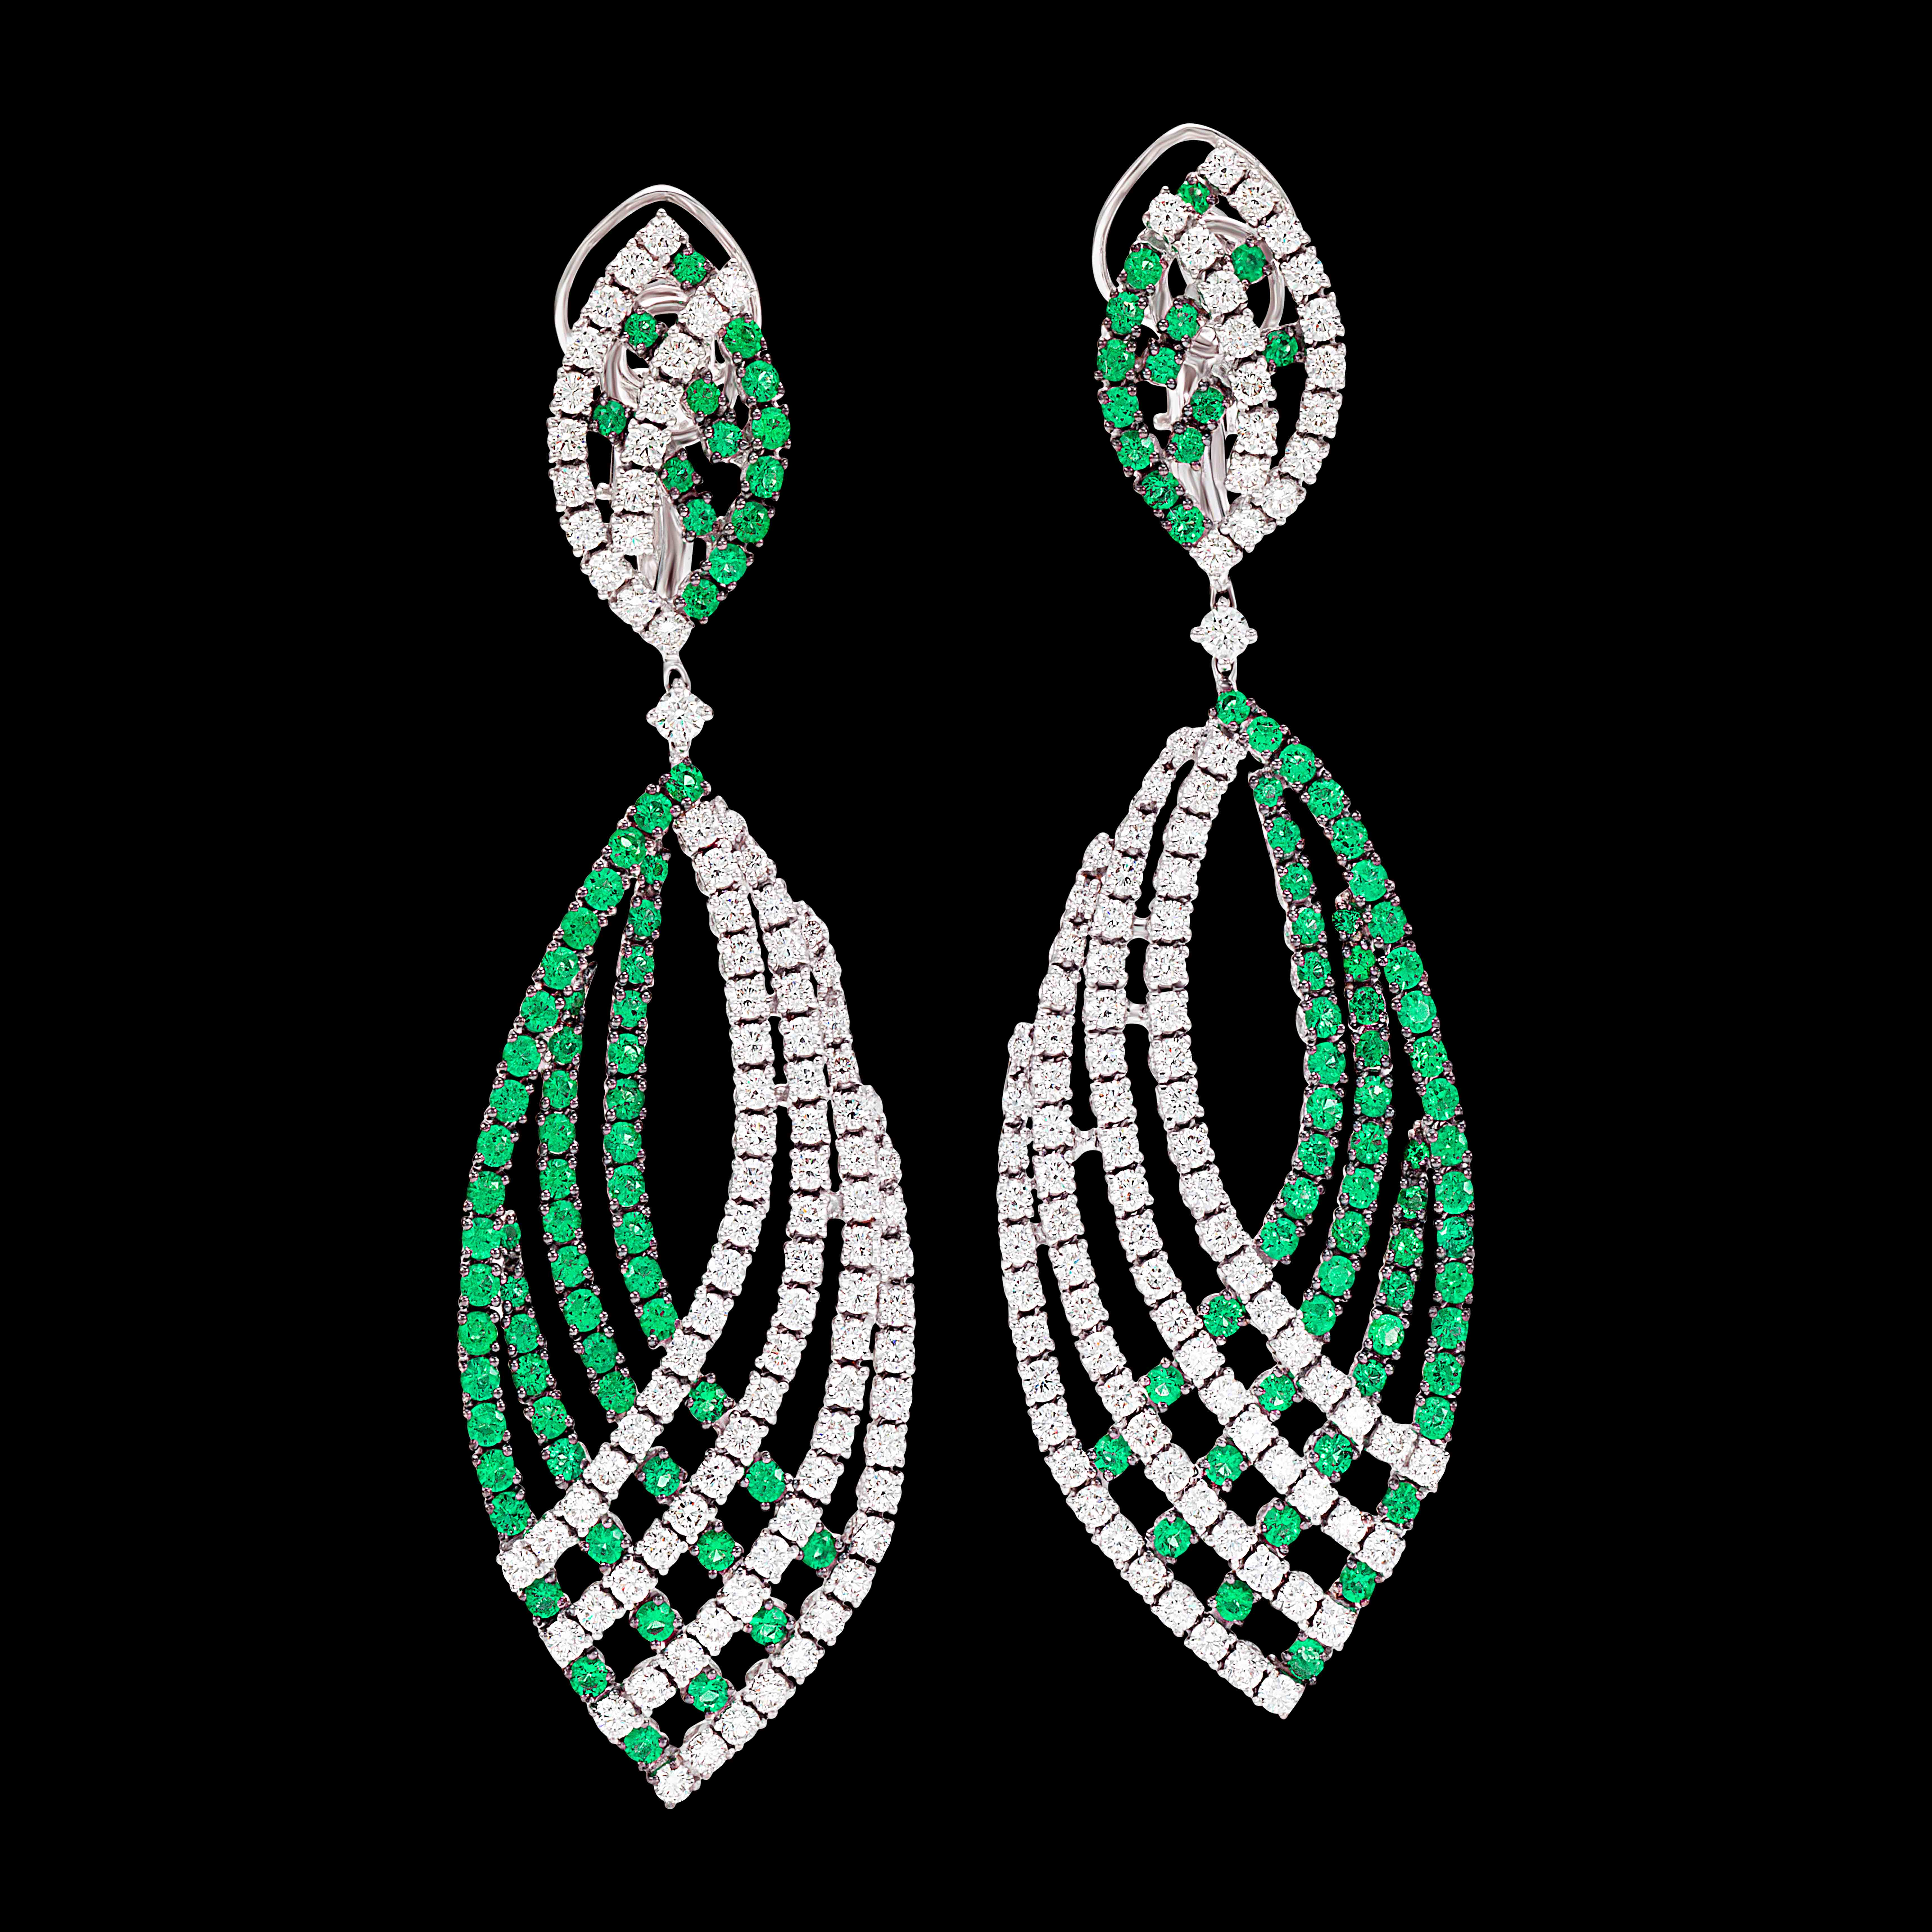 massimo raiteri earring exclusive jewellery gioielli orecchini diamanti diamonds eameralds smeraldi